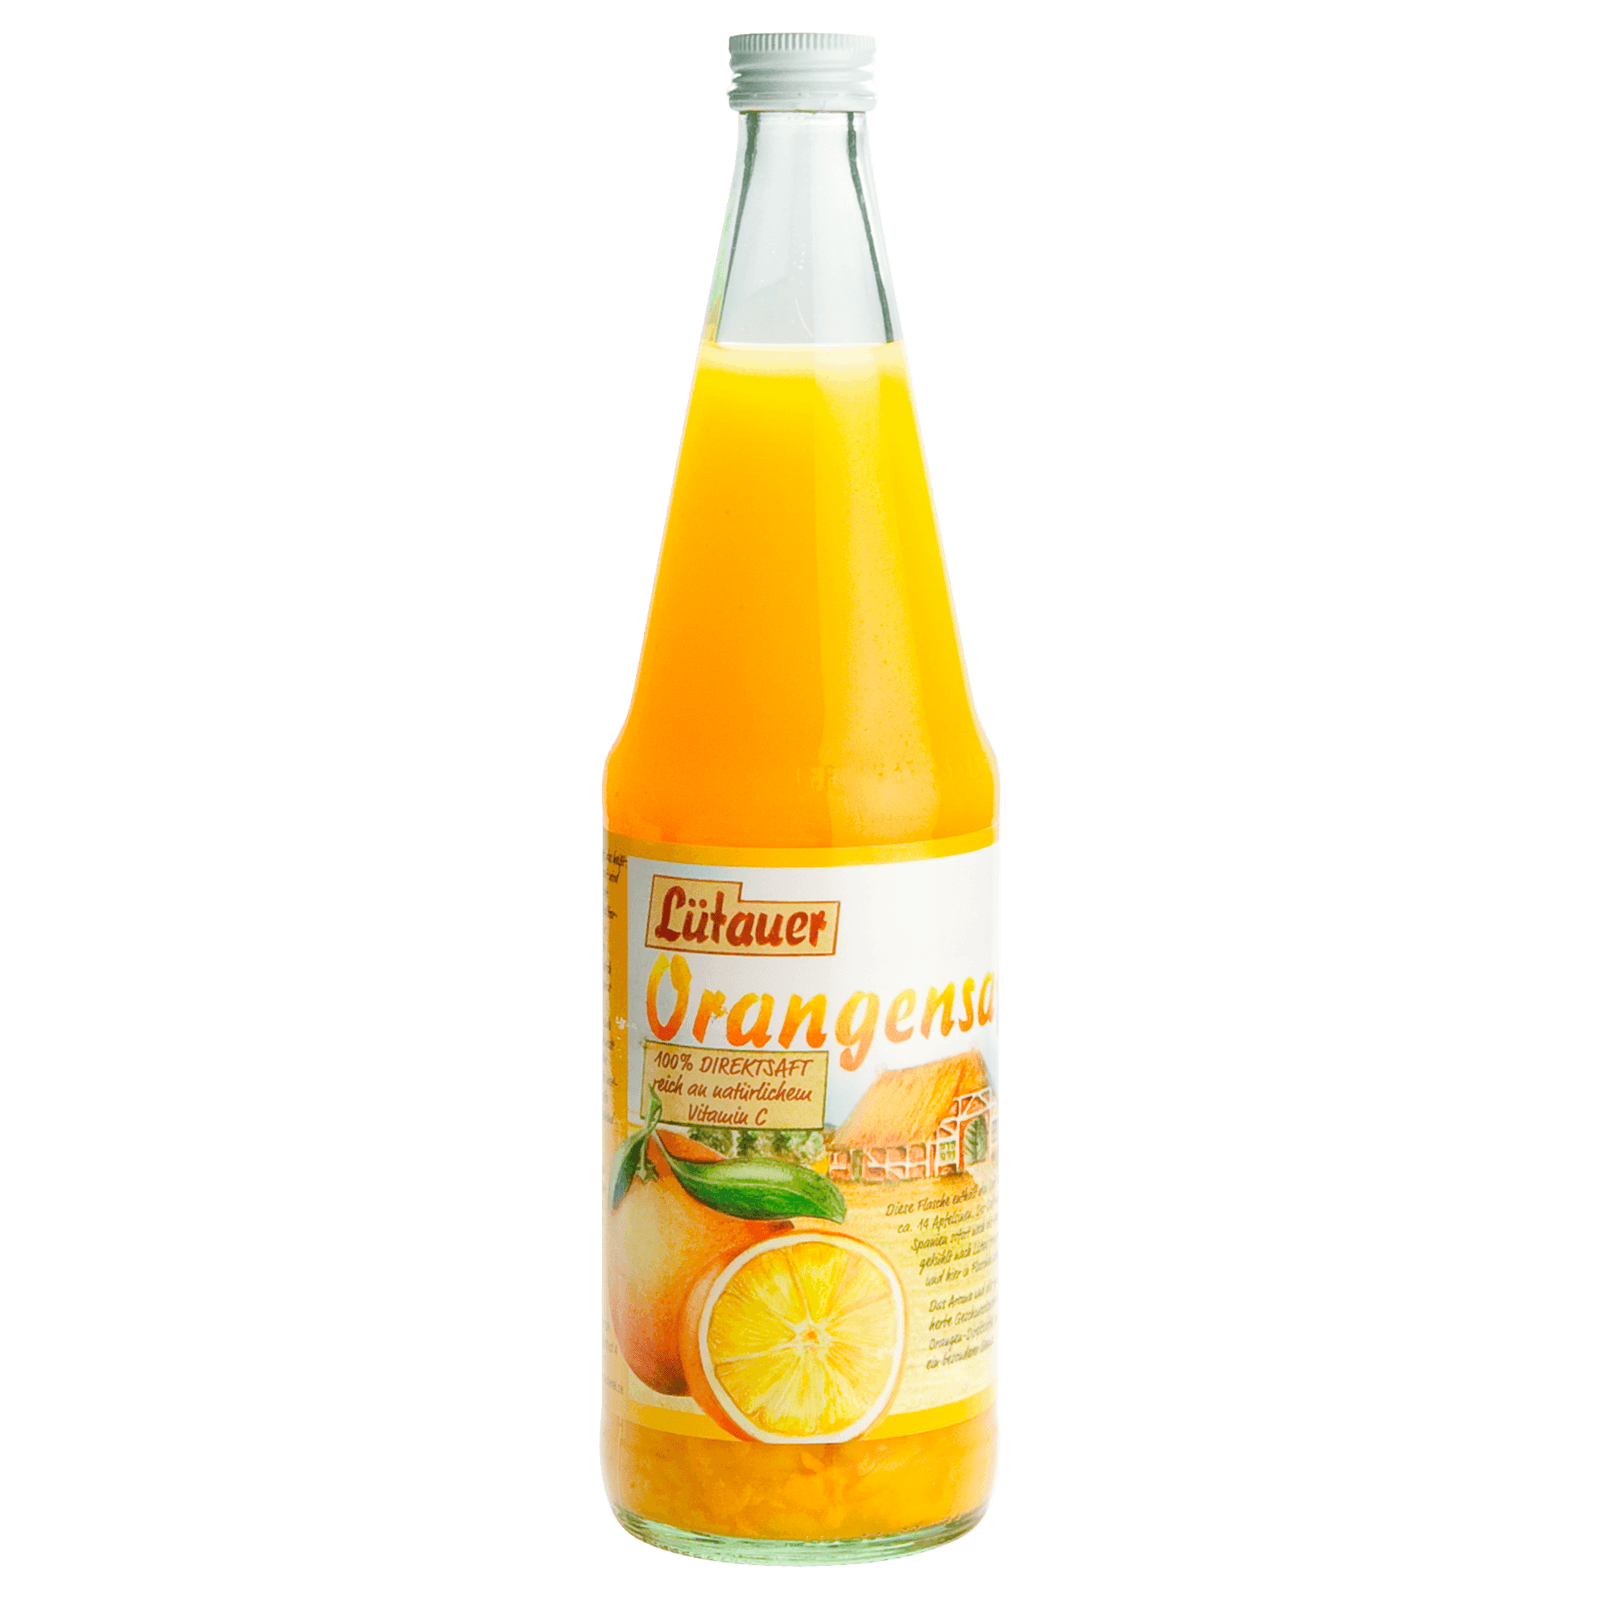 Lütauer Orangensaft 0,7l  für 1.99 EUR